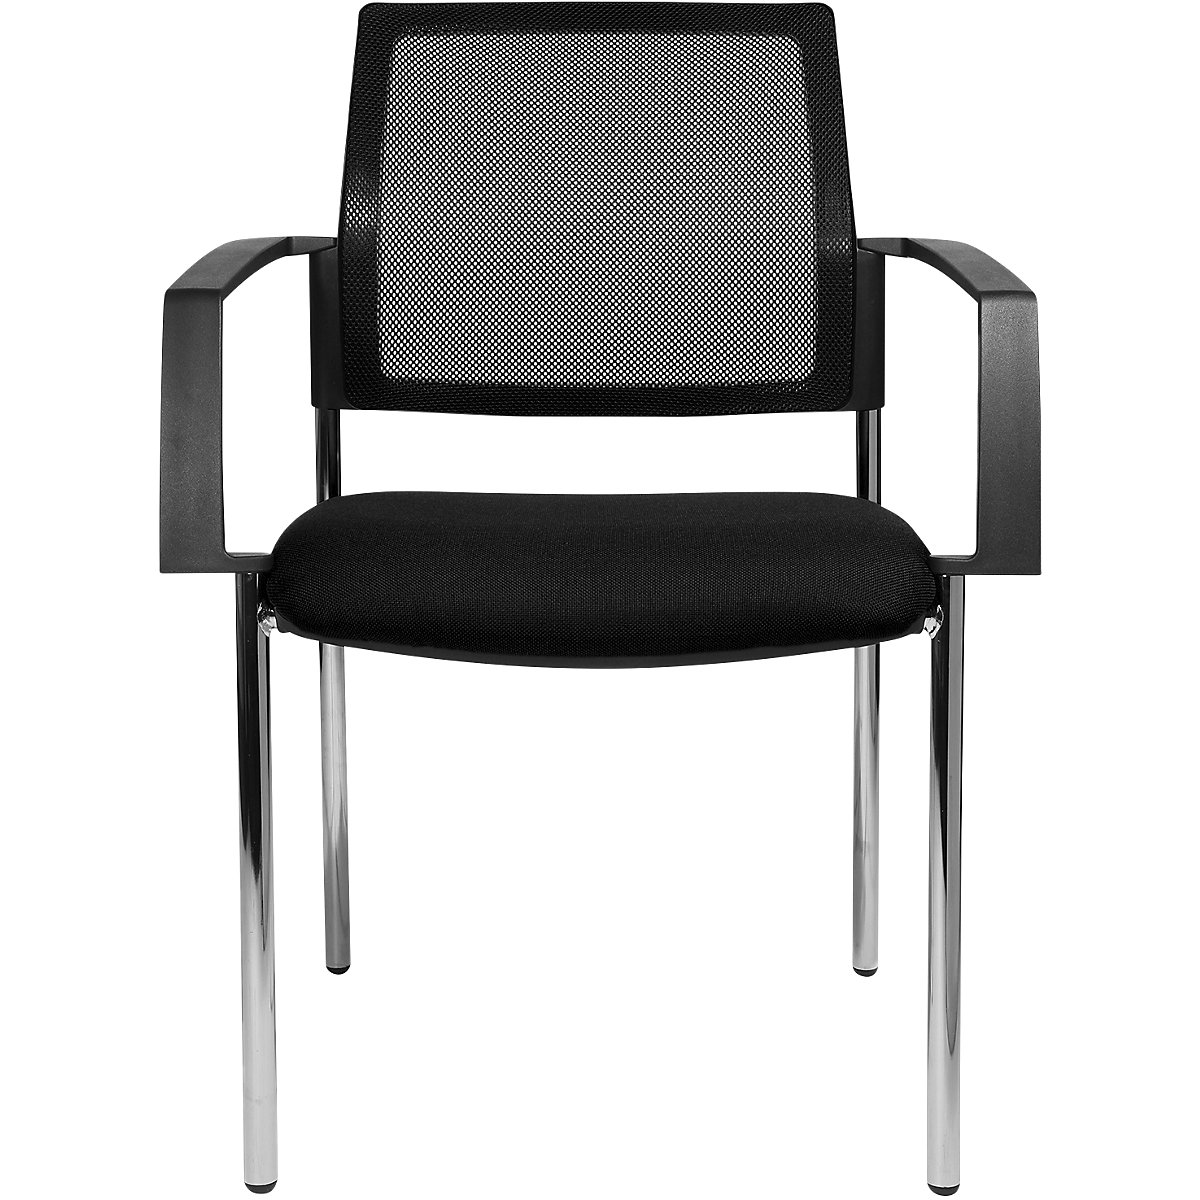 Síťovaná stohovací židle – Topstar, 4 nohy, bal.j. 2 ks, černý sedák, pochromovaný podstavec-4